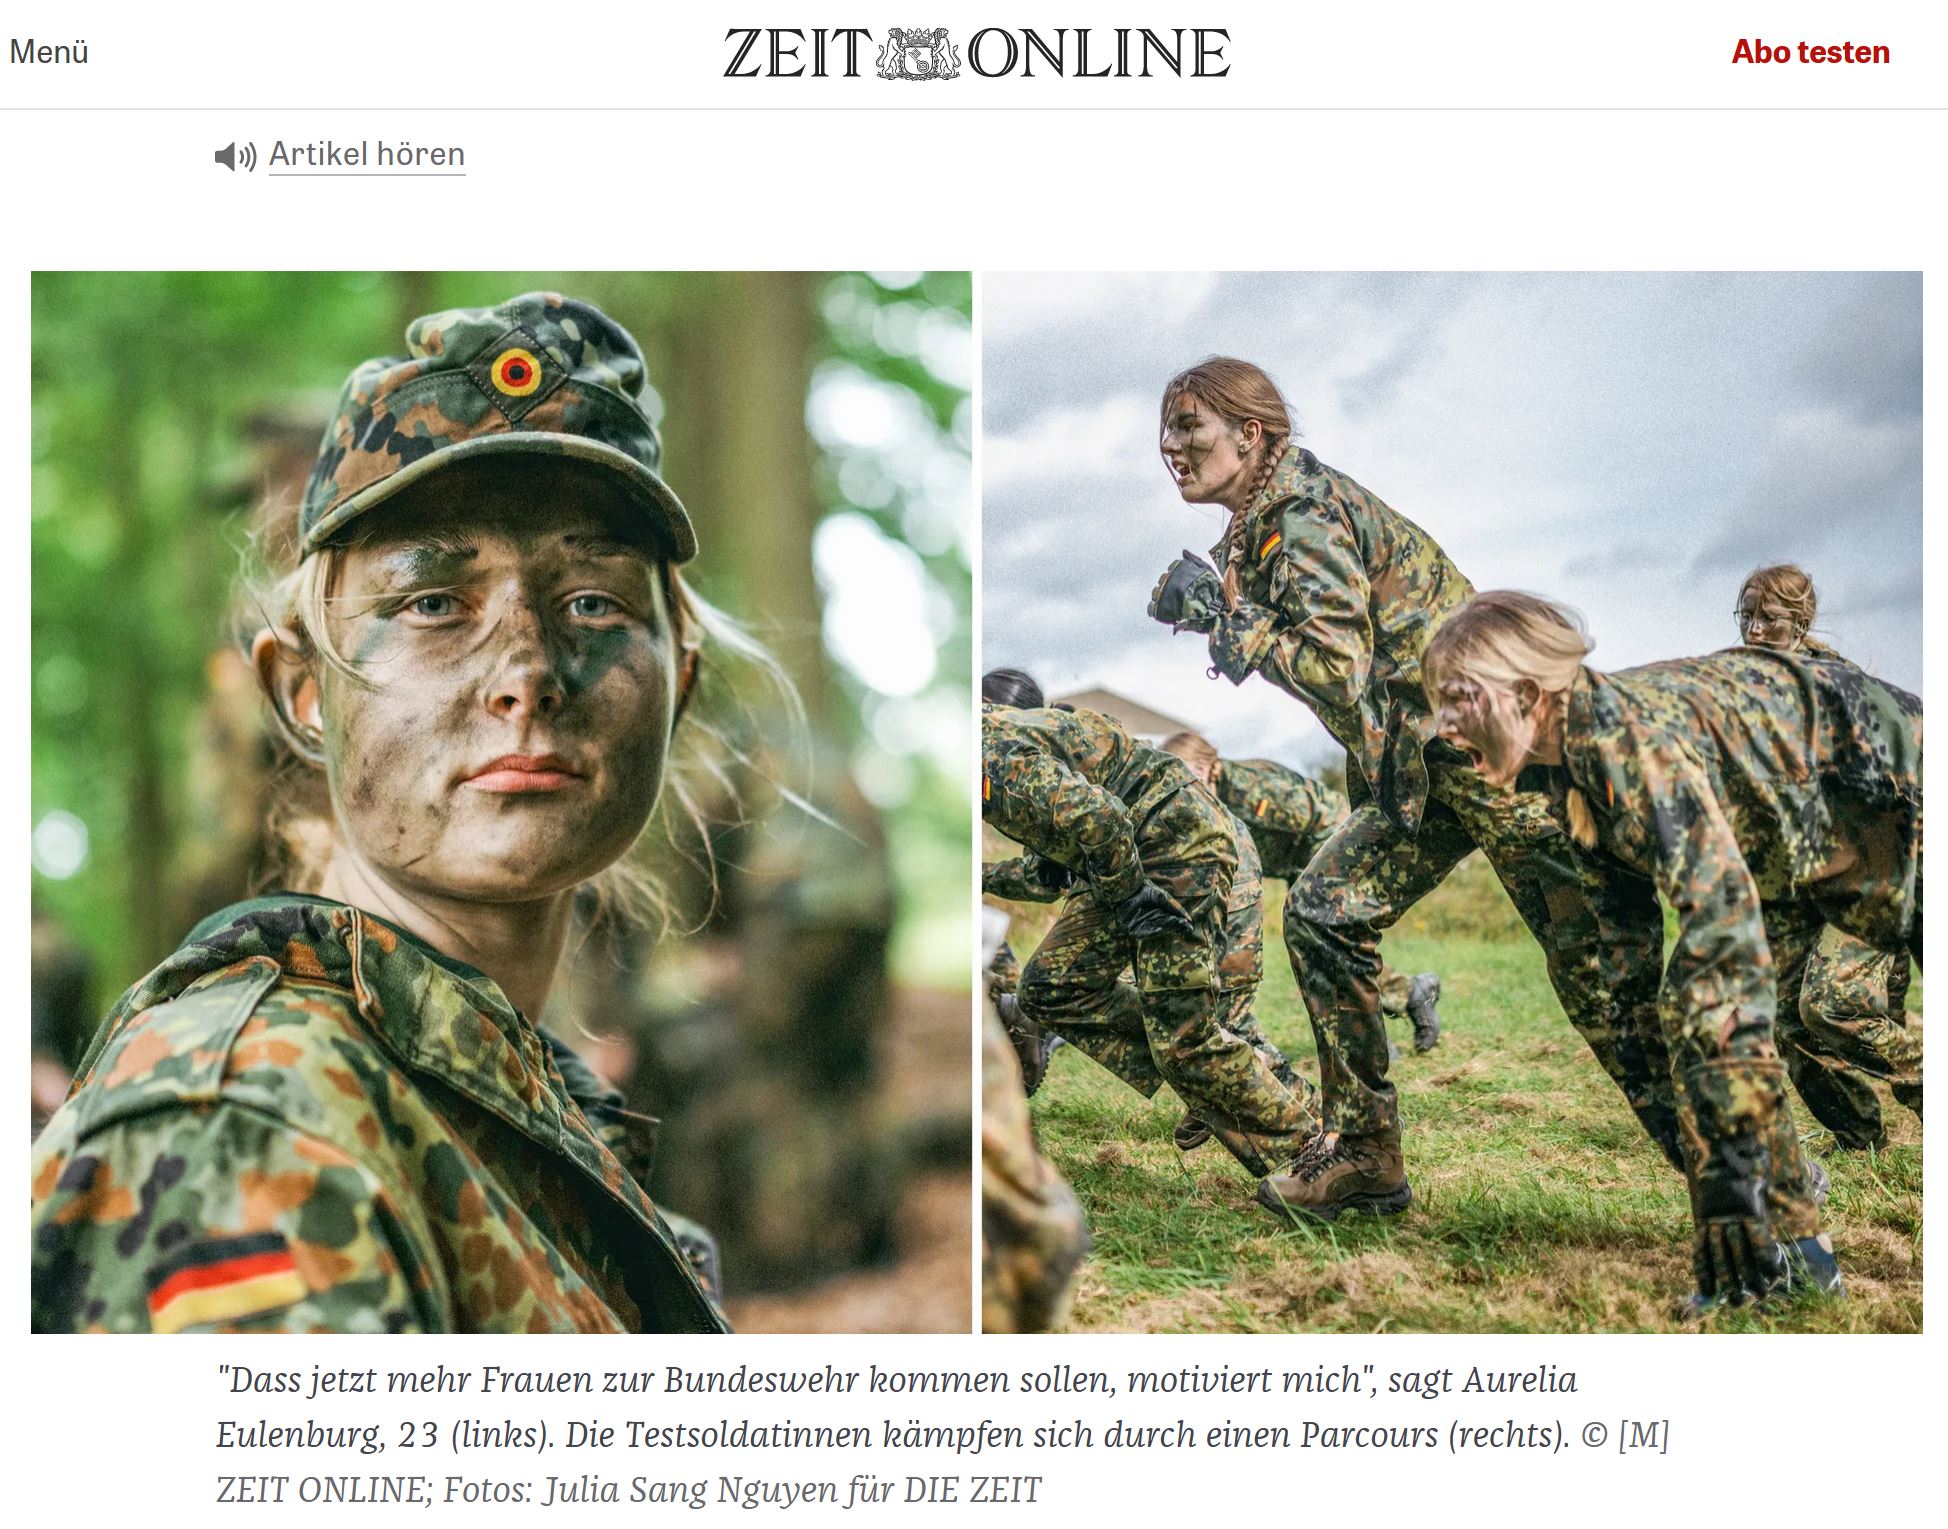 Junge Frauen in Kampfuniformen der Bundeswehr bei sportlicher Übung auf einem Rasenfeld